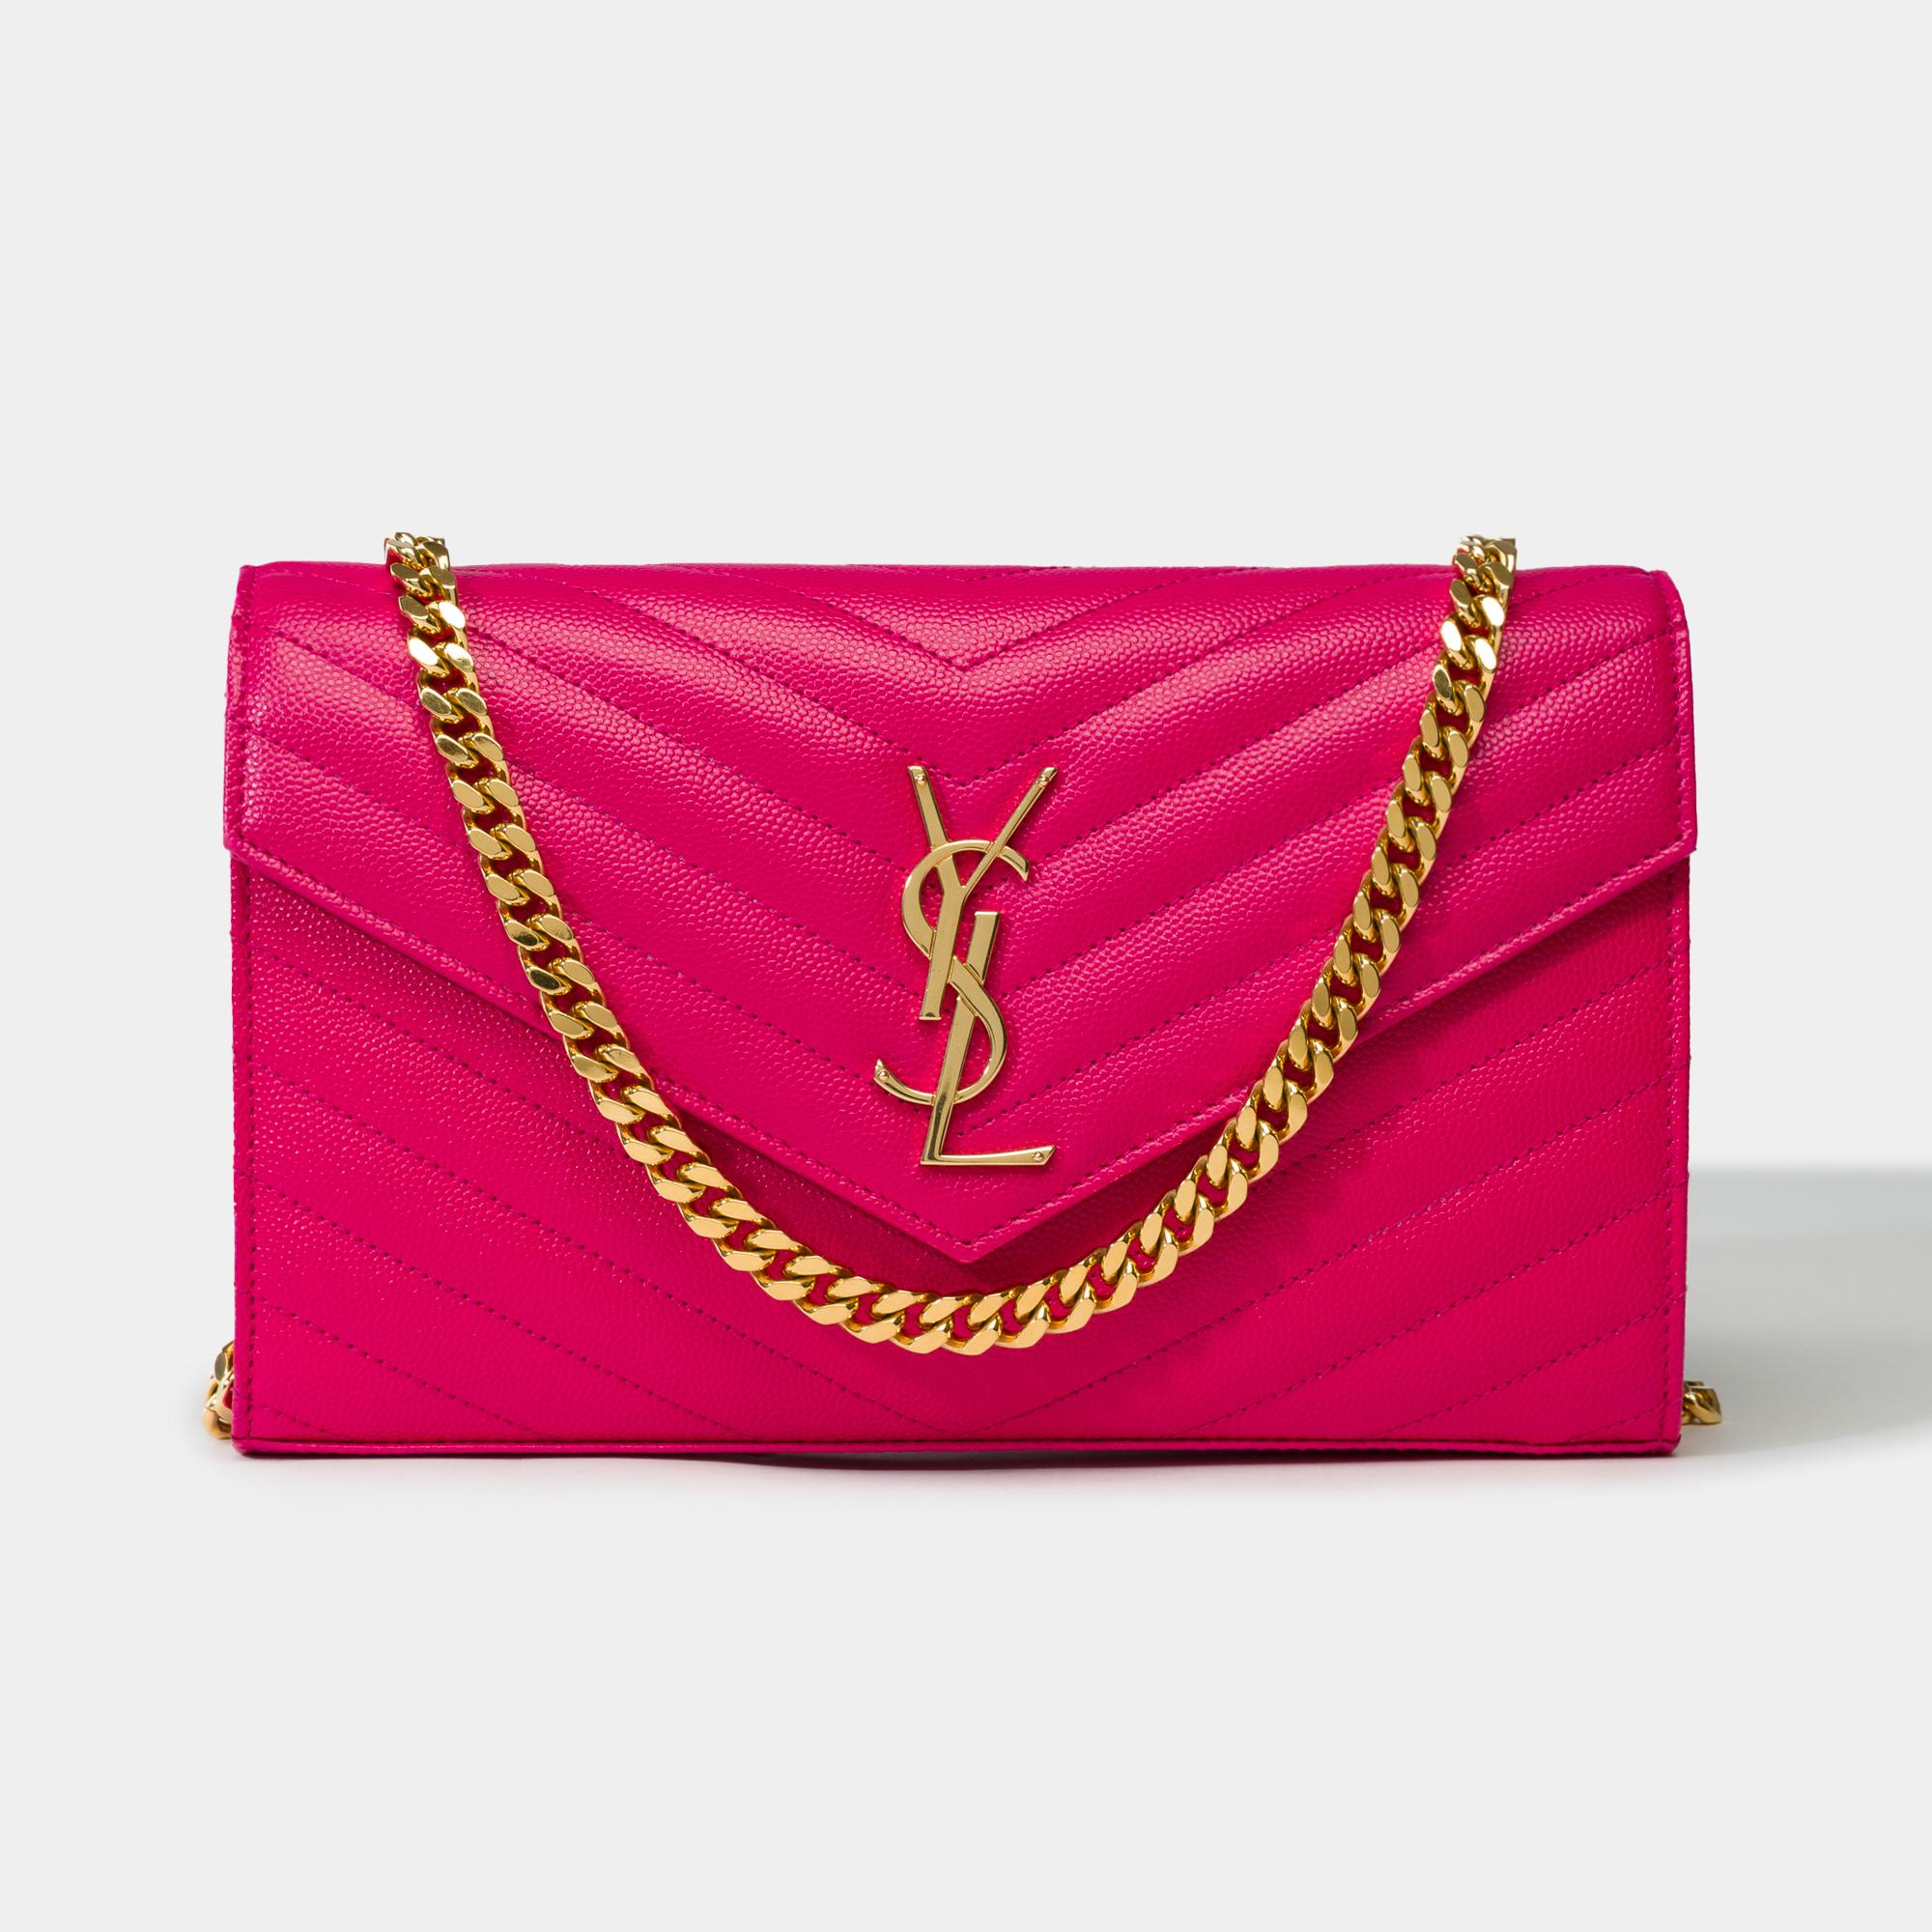 Étonnante Pochette YSL intemporelle sac à bandoulière chaîne ornée de Cassandra rose et surpiquée de l'emblématique cuir de veau rose matelassé.
Compact et fonctionnel, il est doté d'un compartiment zippé et de fentes pour cartes.
Sa poignée